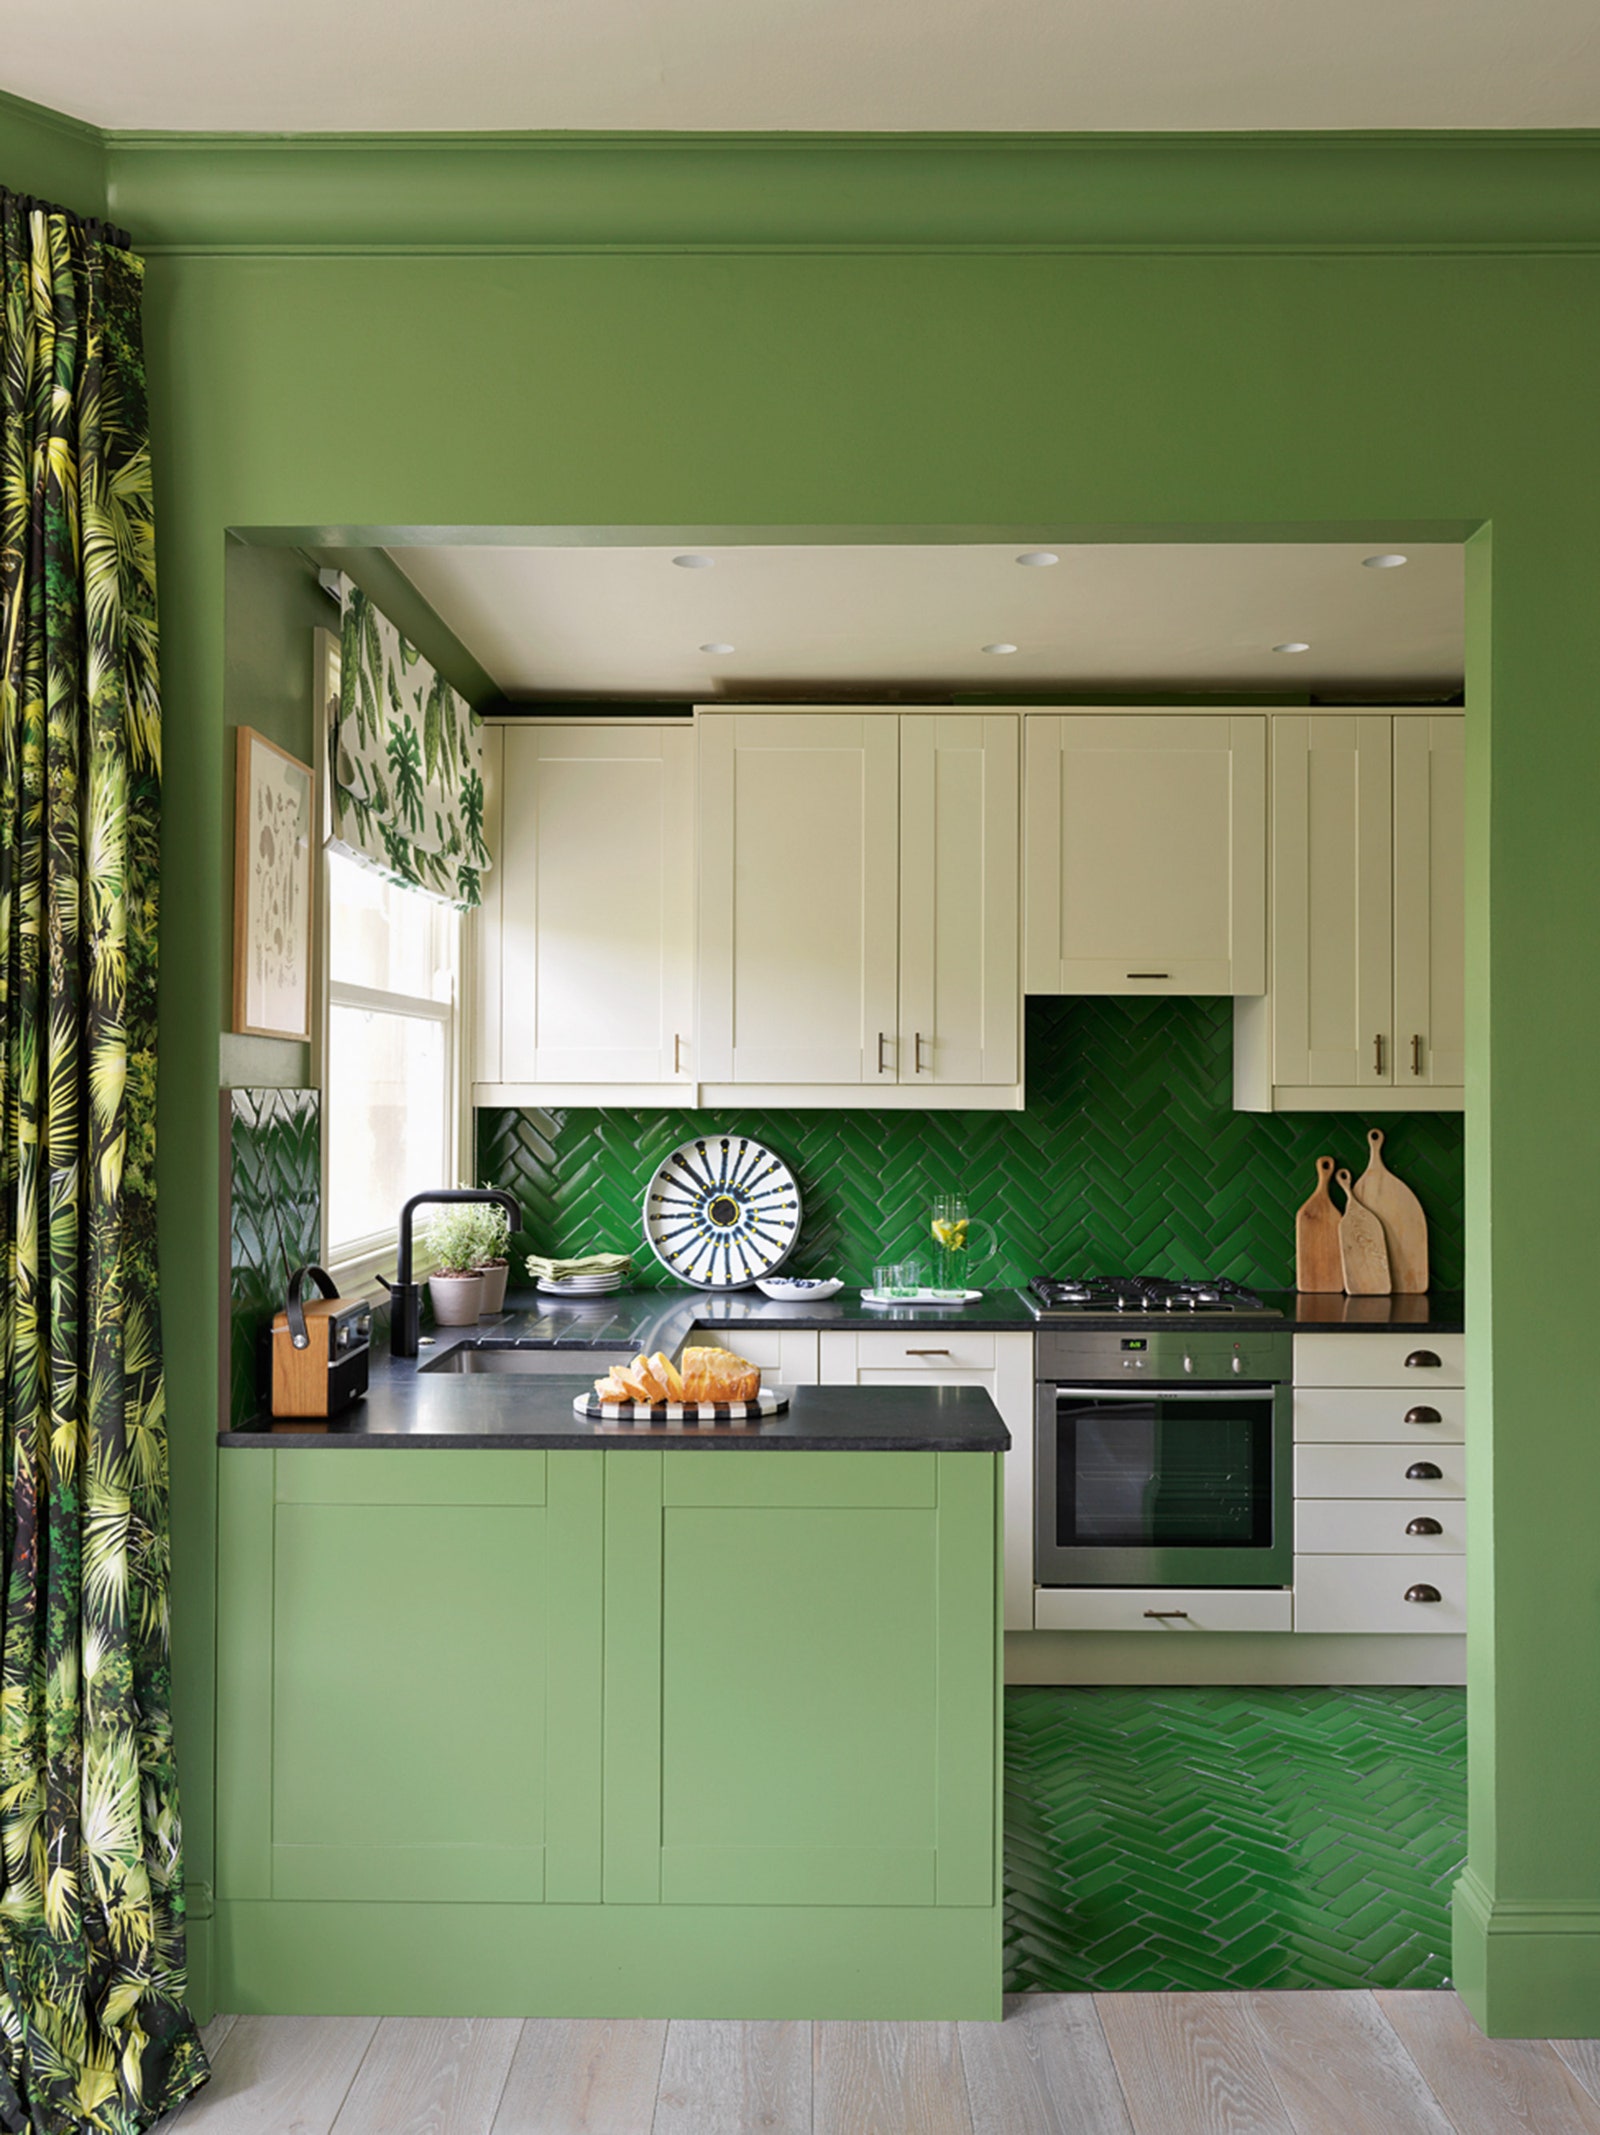 Квартира в Лондоне оформленная декоратором Натальей Масловой. Зеленый цвет здесь выбран не случайно дом утопает в зелени...